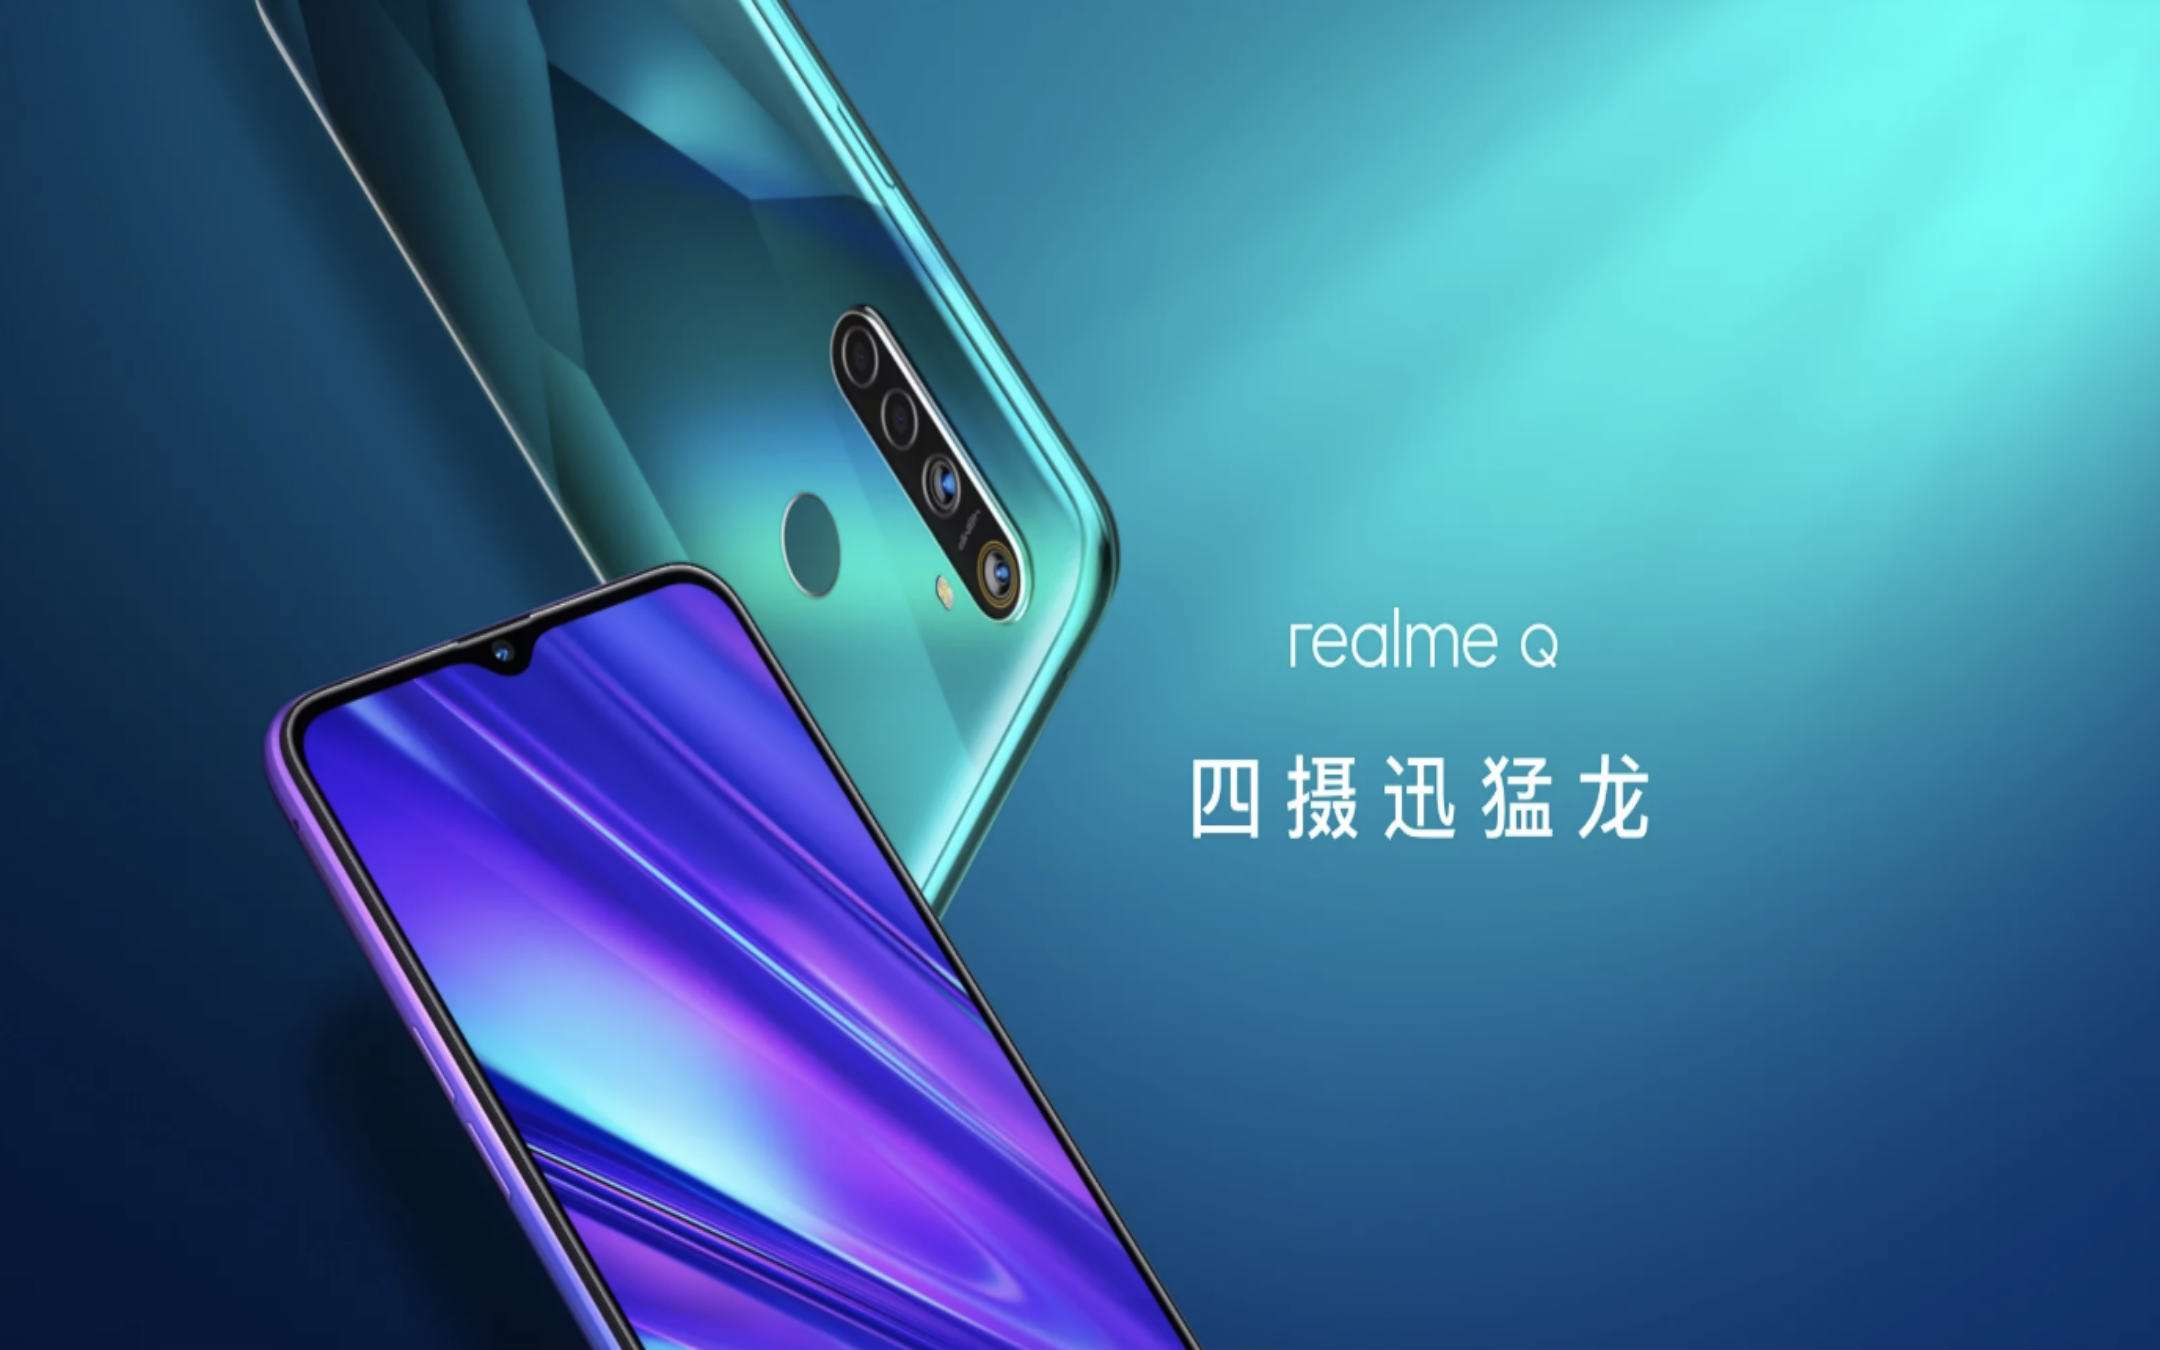 Realme Q: ecco la variante cinese di Realme 5 Pro